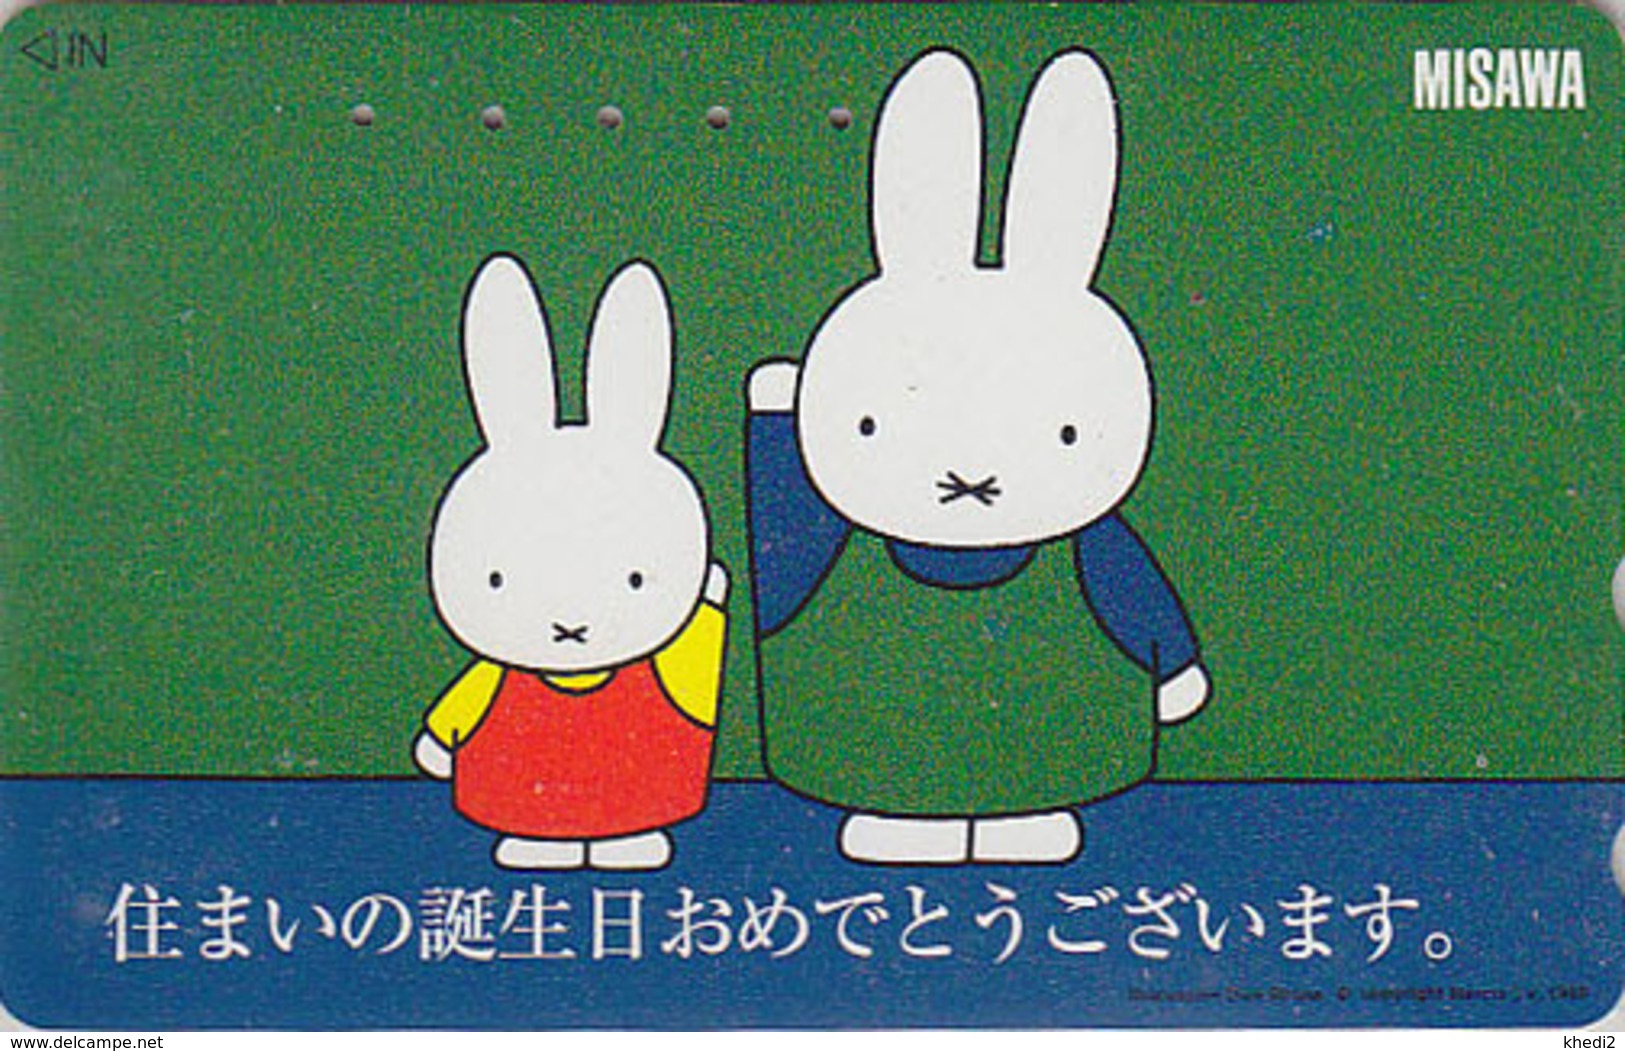 Télécarte Japon / 110-016 - BD COMICS - LAPIN / MISAWA - DICK BRUNA - MIFFY - RABBIT Japan Phonecard - KANINCHEN - 62 - Rabbits